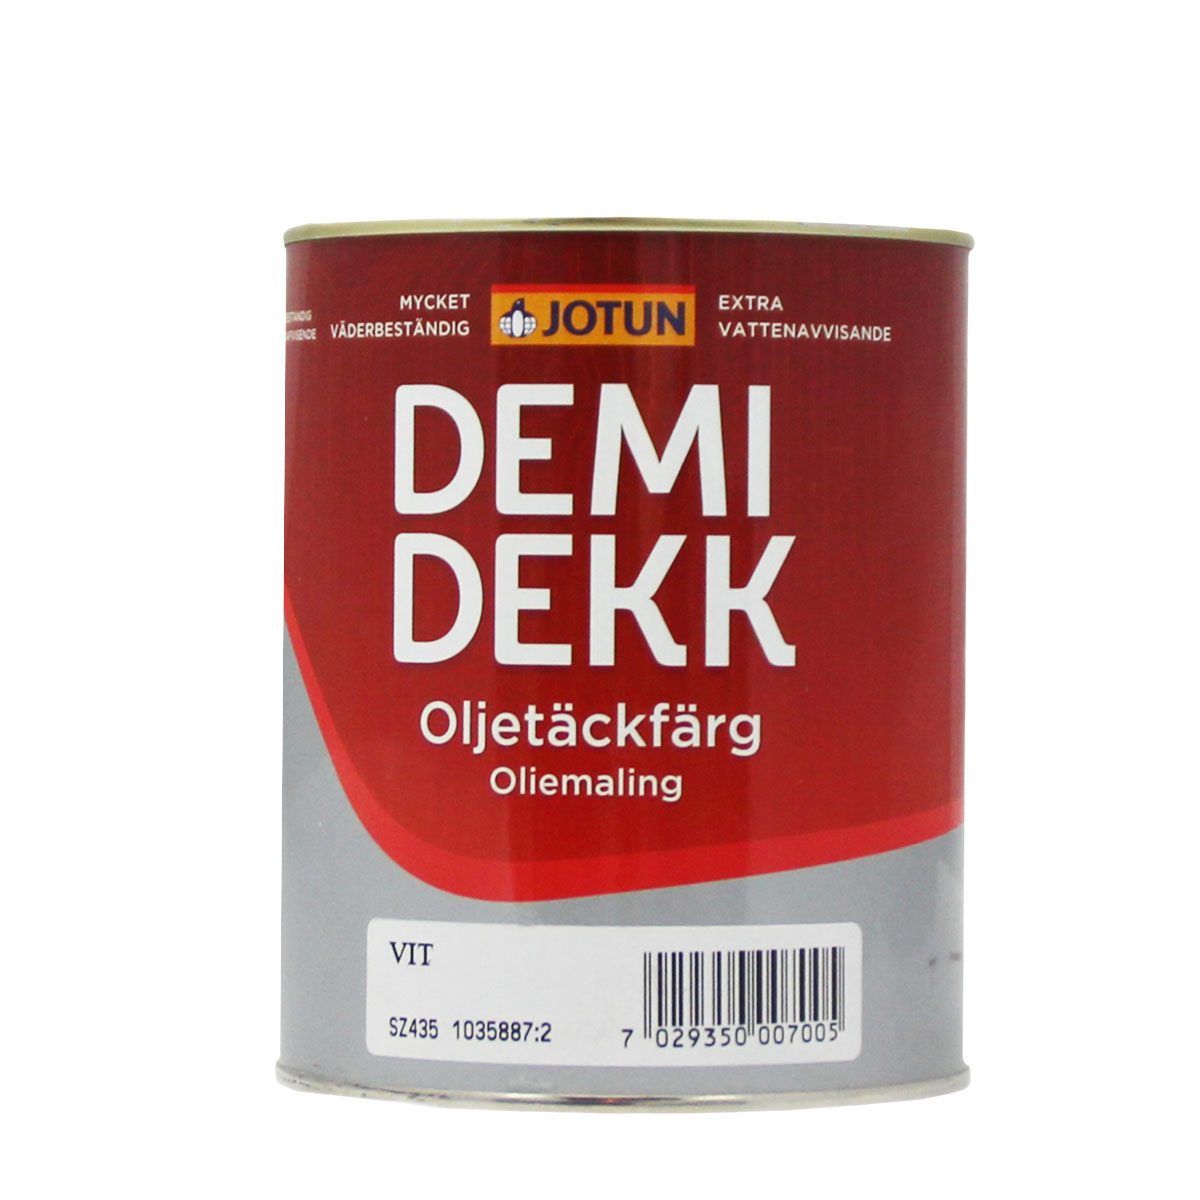 Jotun Demidekk Oljetäckfärg weiss 1L lösemittelhaltige Deckfarbe